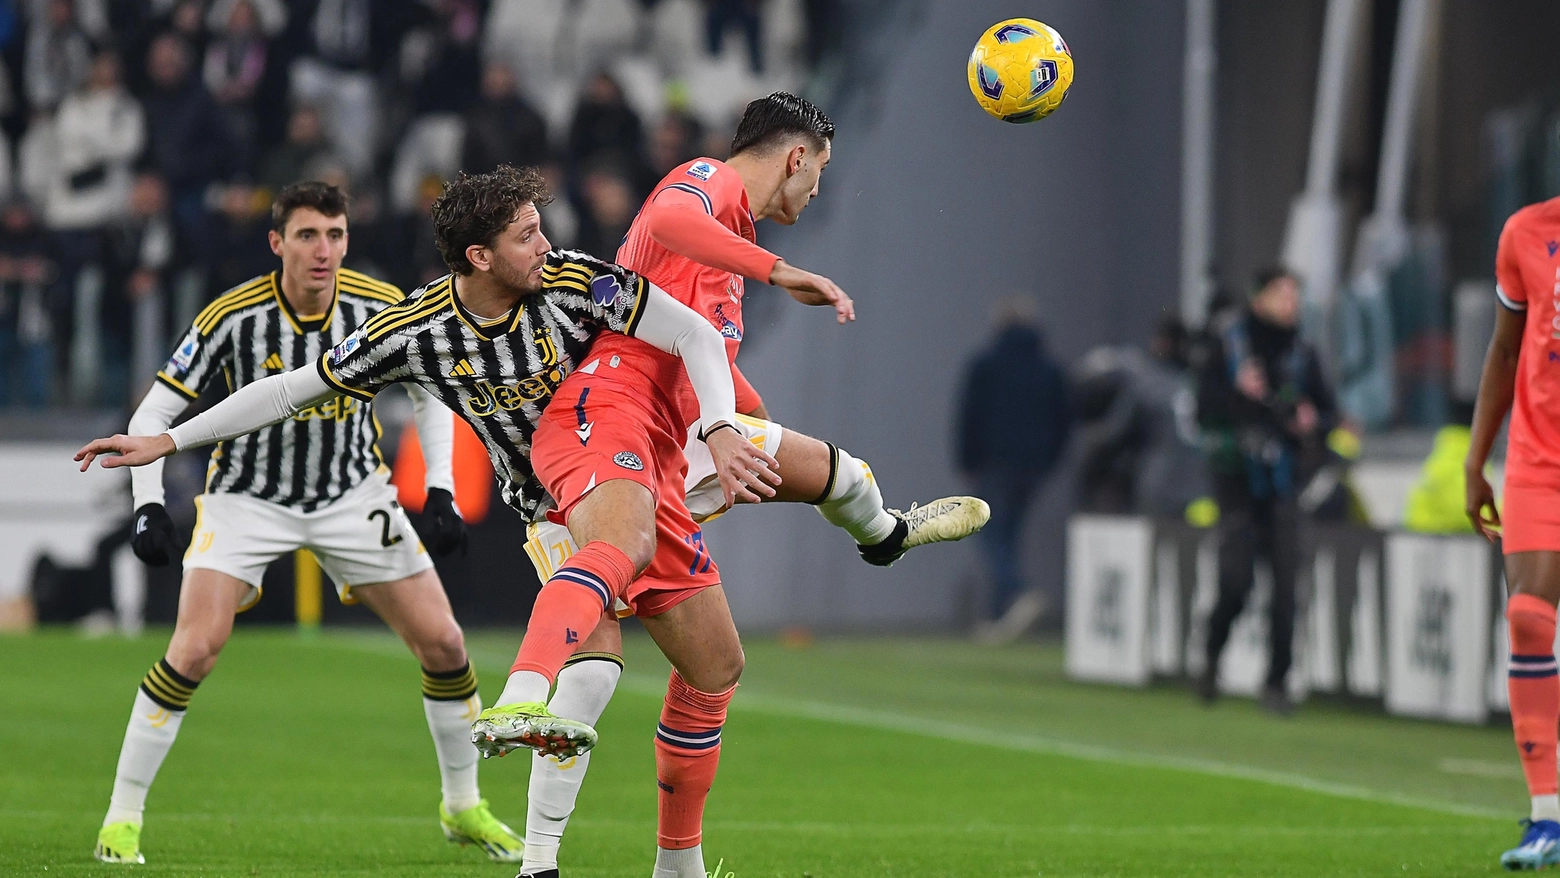 La sfida tra Juve e Udinese